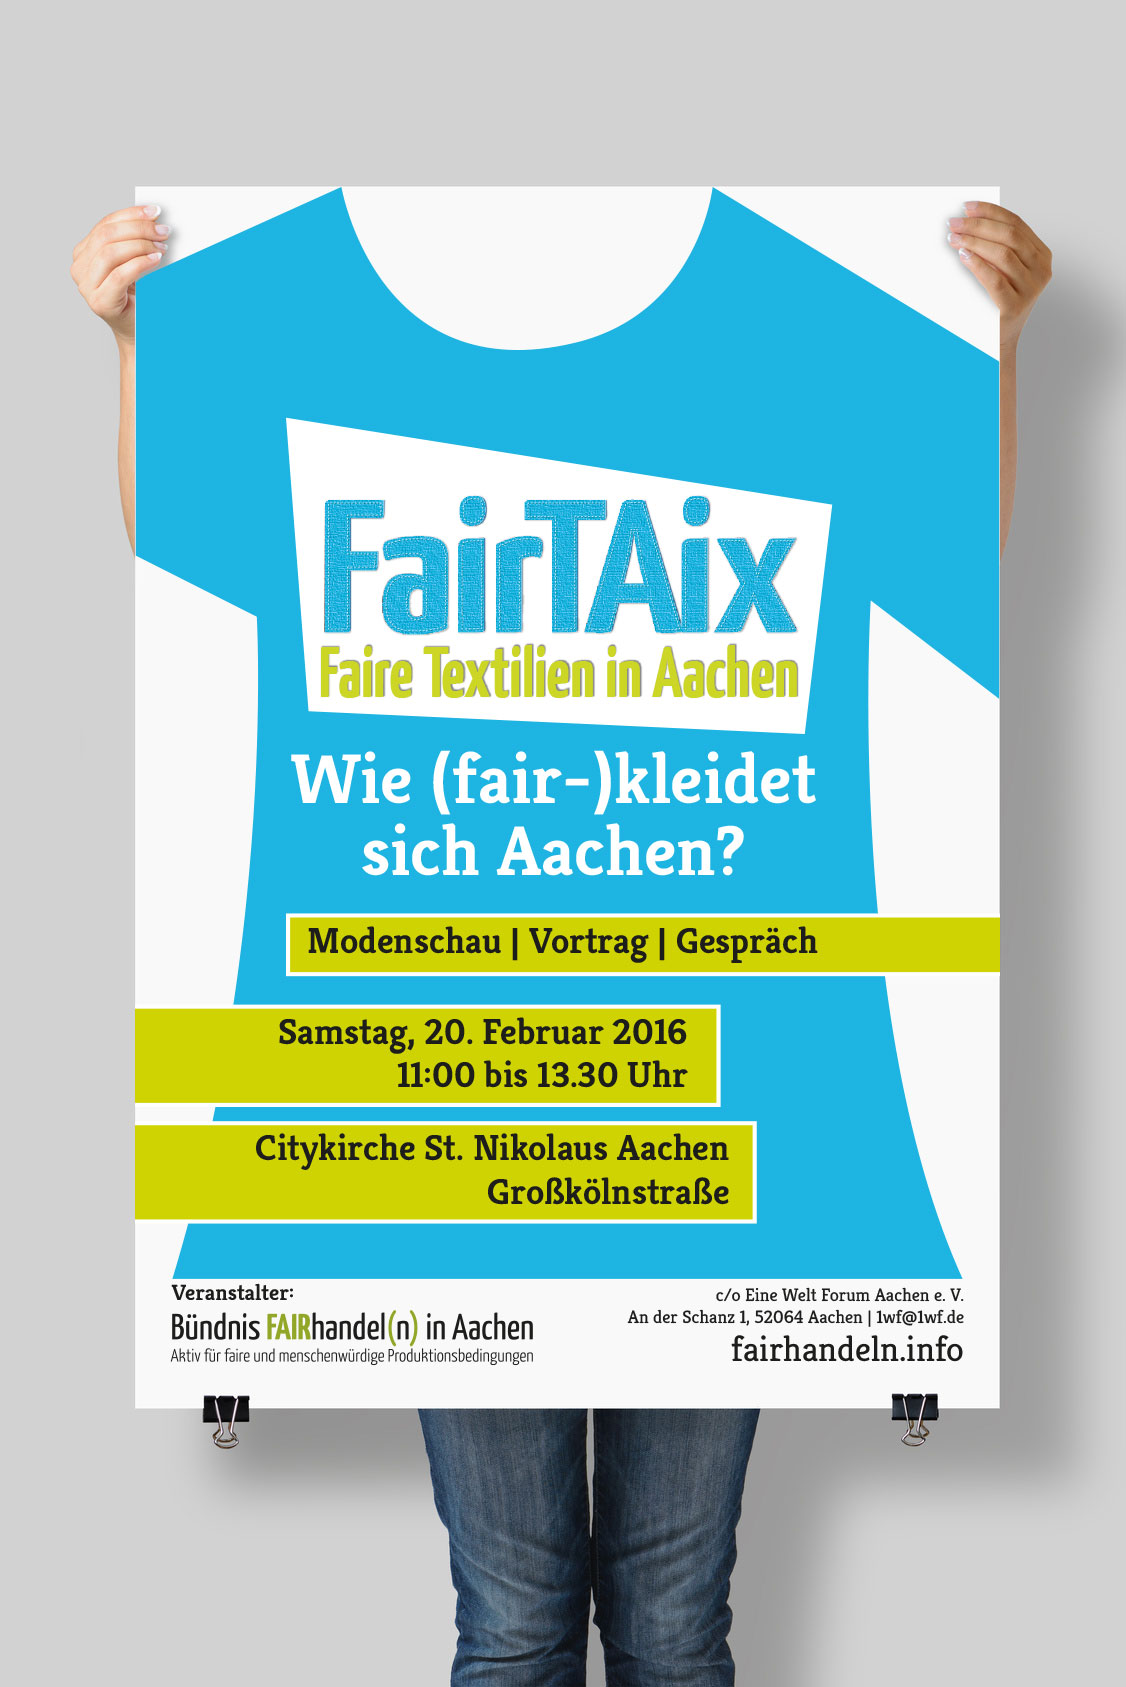 Fairtaix